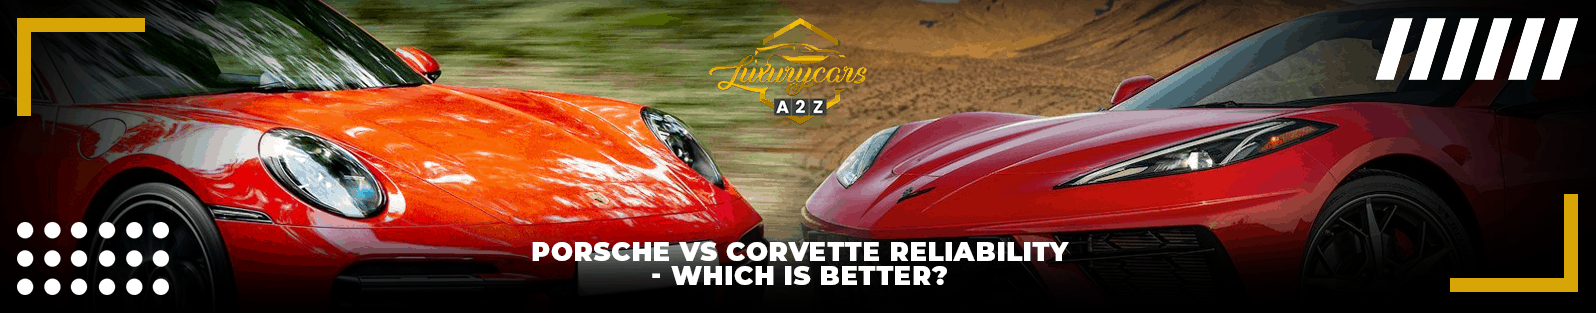 Fiabilité de la Porsche et de la Corvette - laquelle est la meilleure